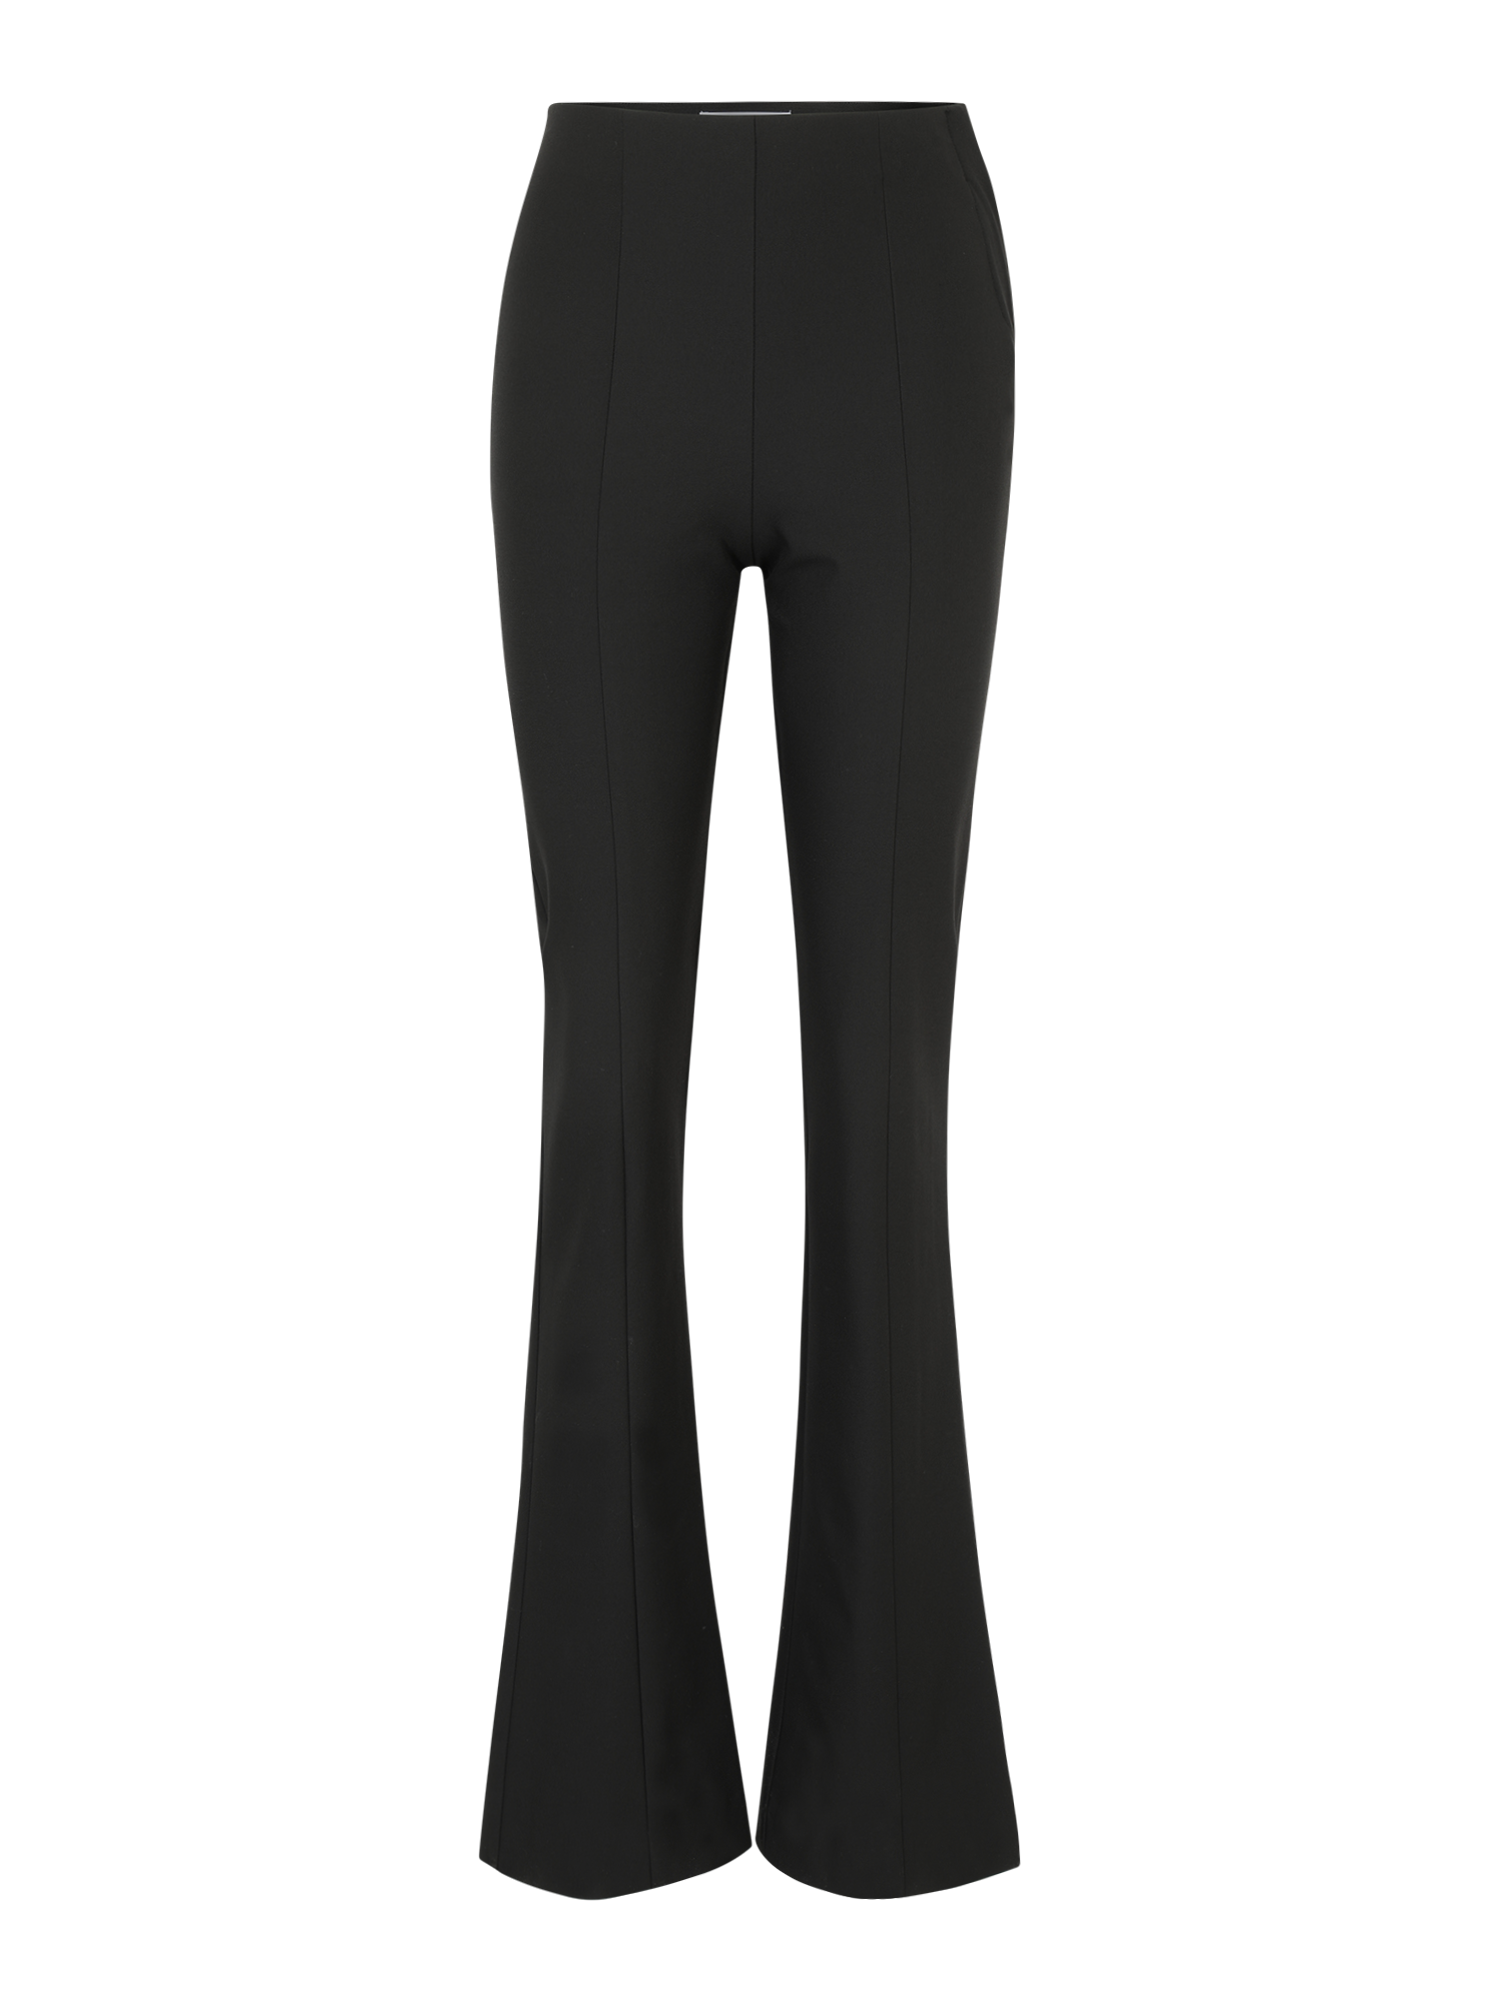 Odzież Spodnie Selected Femme Tall Spodnie ELIANA w kolorze Czarnym 